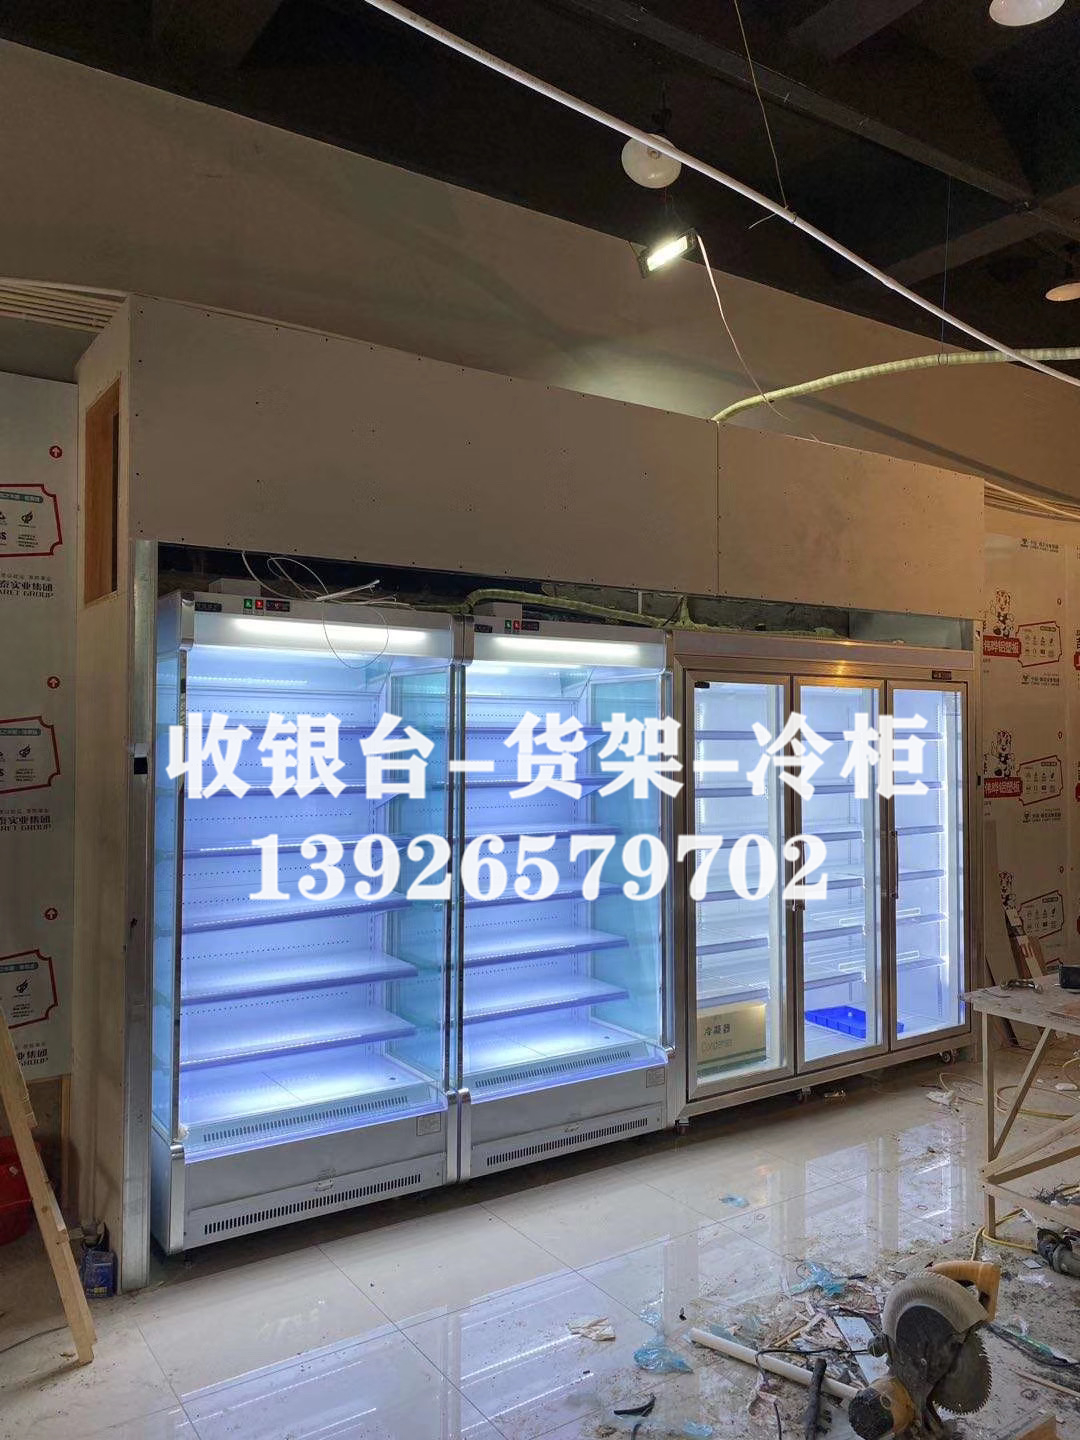 其他制冷设备 供应广州冷柜深圳饮料柜江门展示冷柜冷柜定做送货安装1